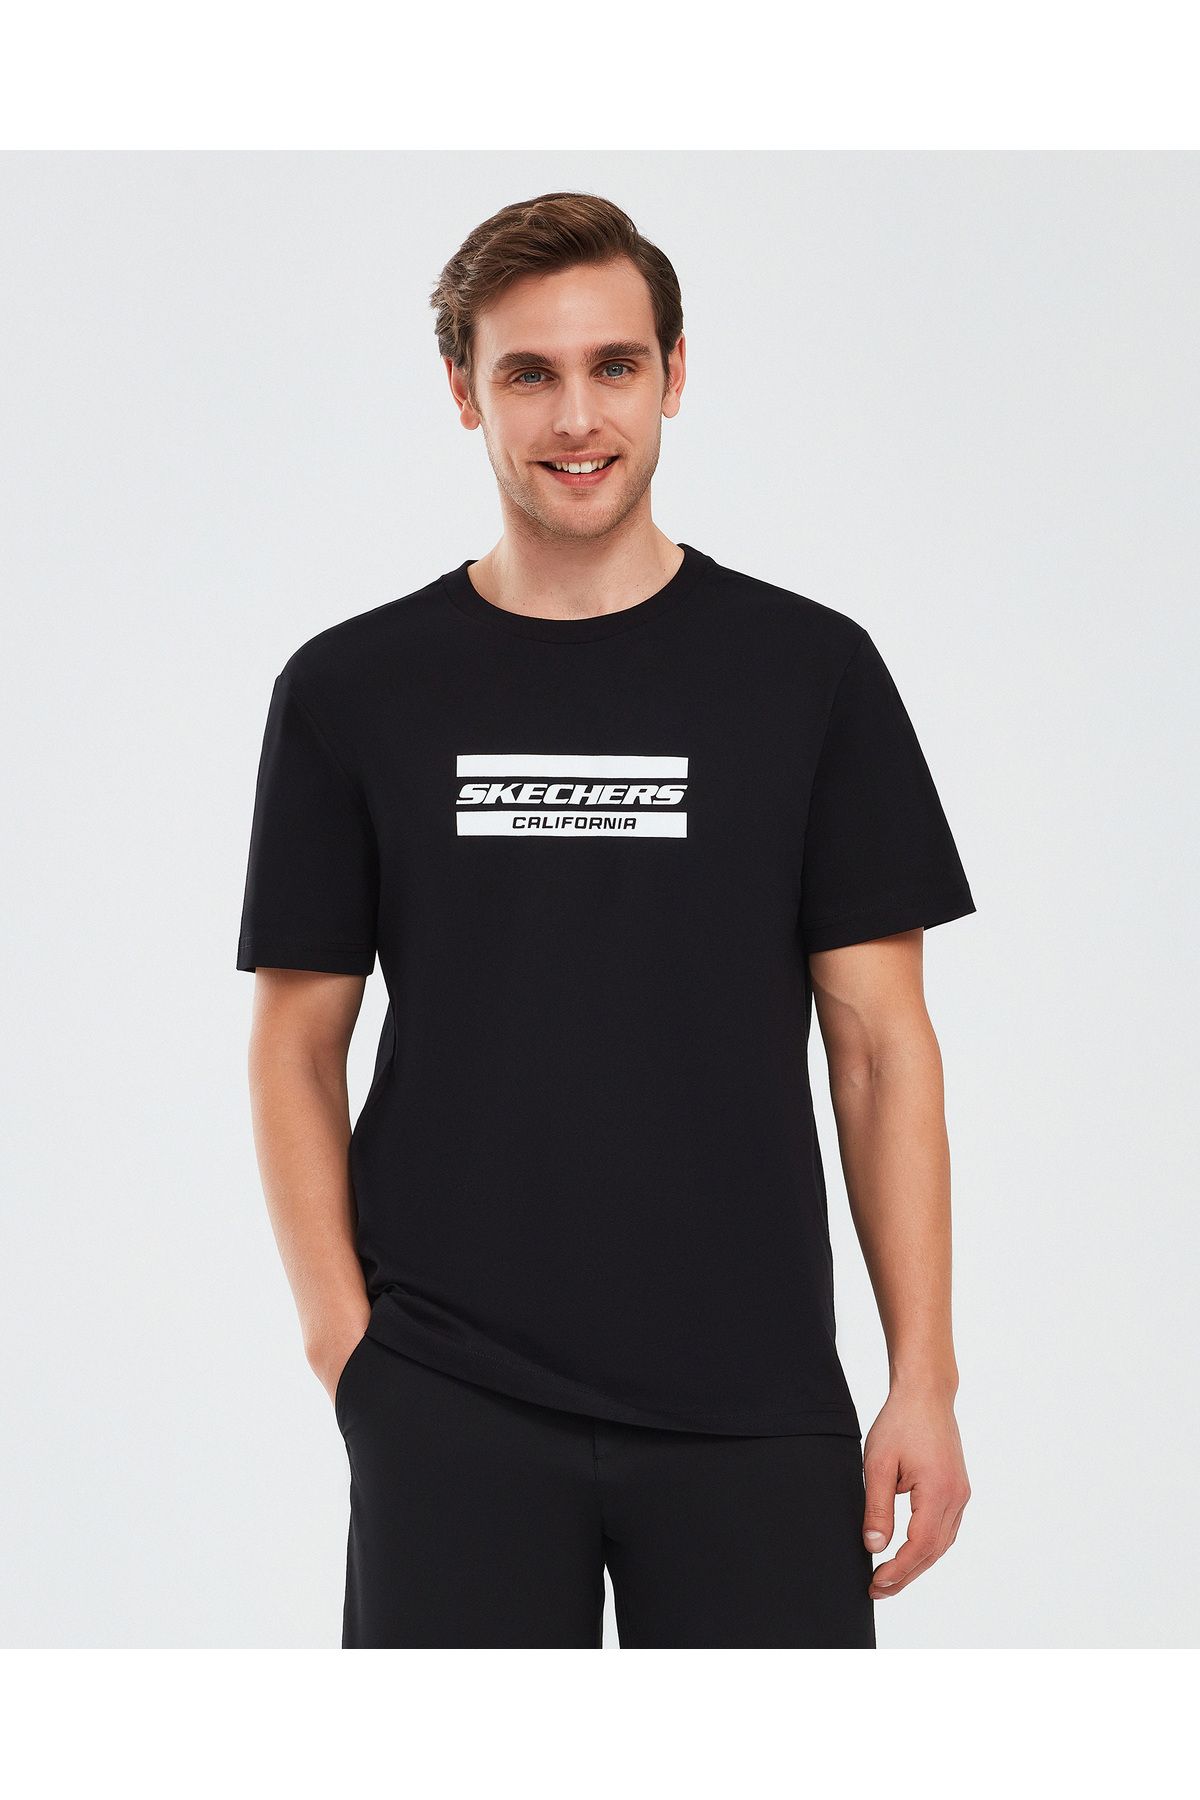 Skechers Graphic T-Shirt M Short Sleeve Erkek Siyah Tshirt S241056-001